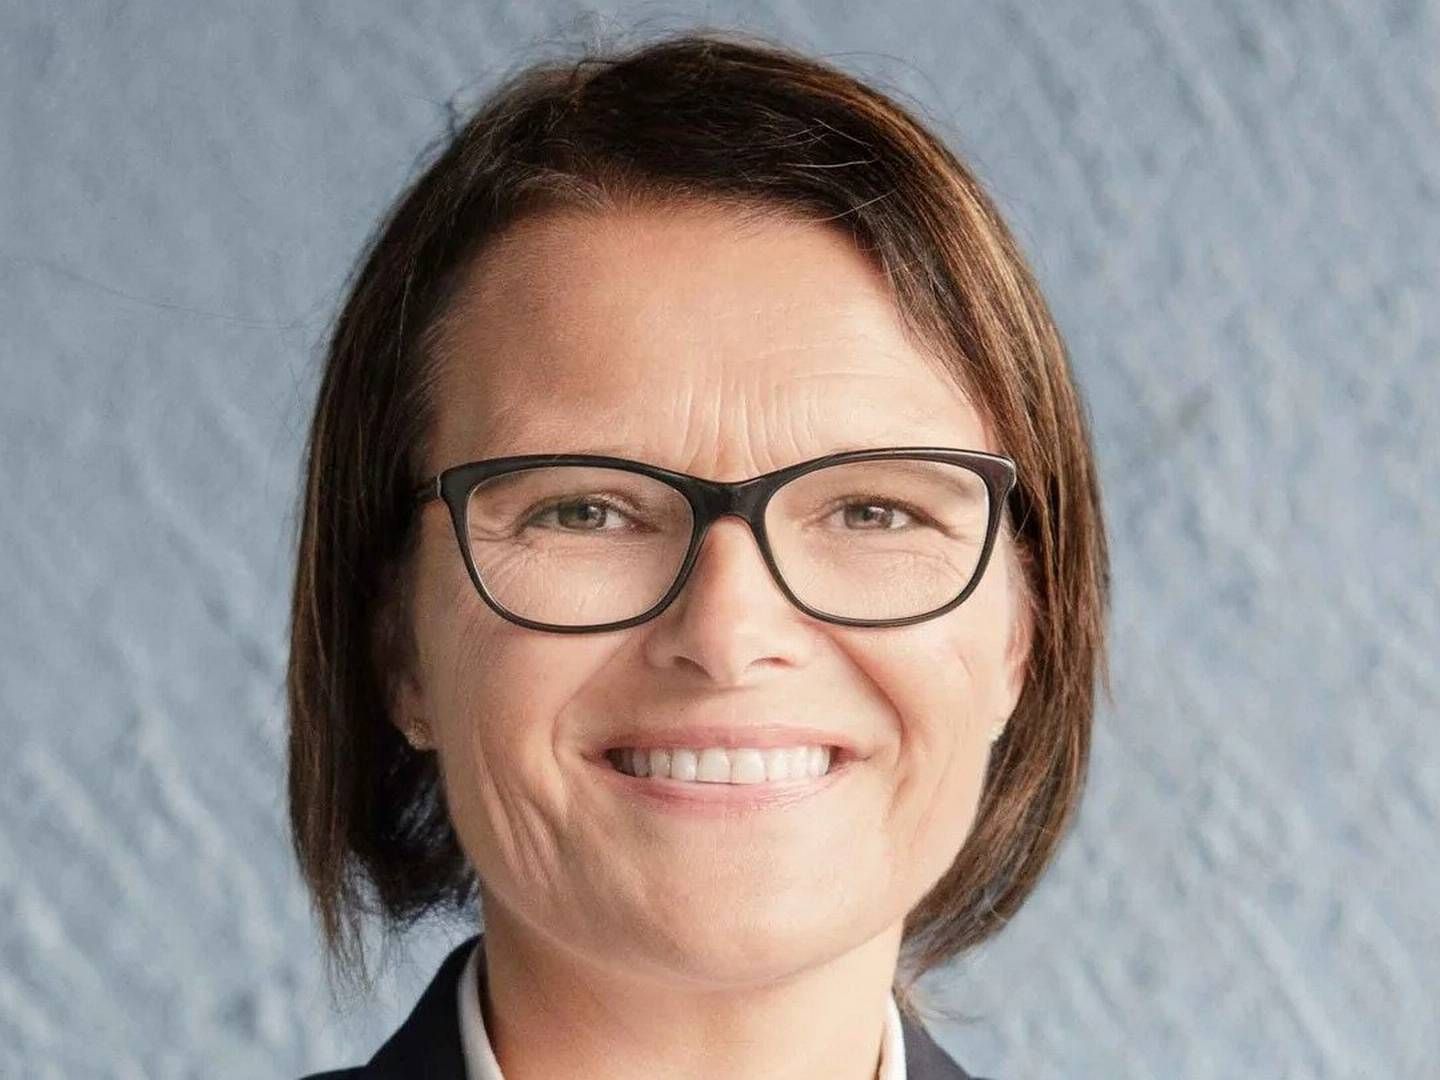 GIR SEG: Trude Marie Wold gir seg som nestleder i Advokatforeningen. | Foto: Advokatfirmaet Wold